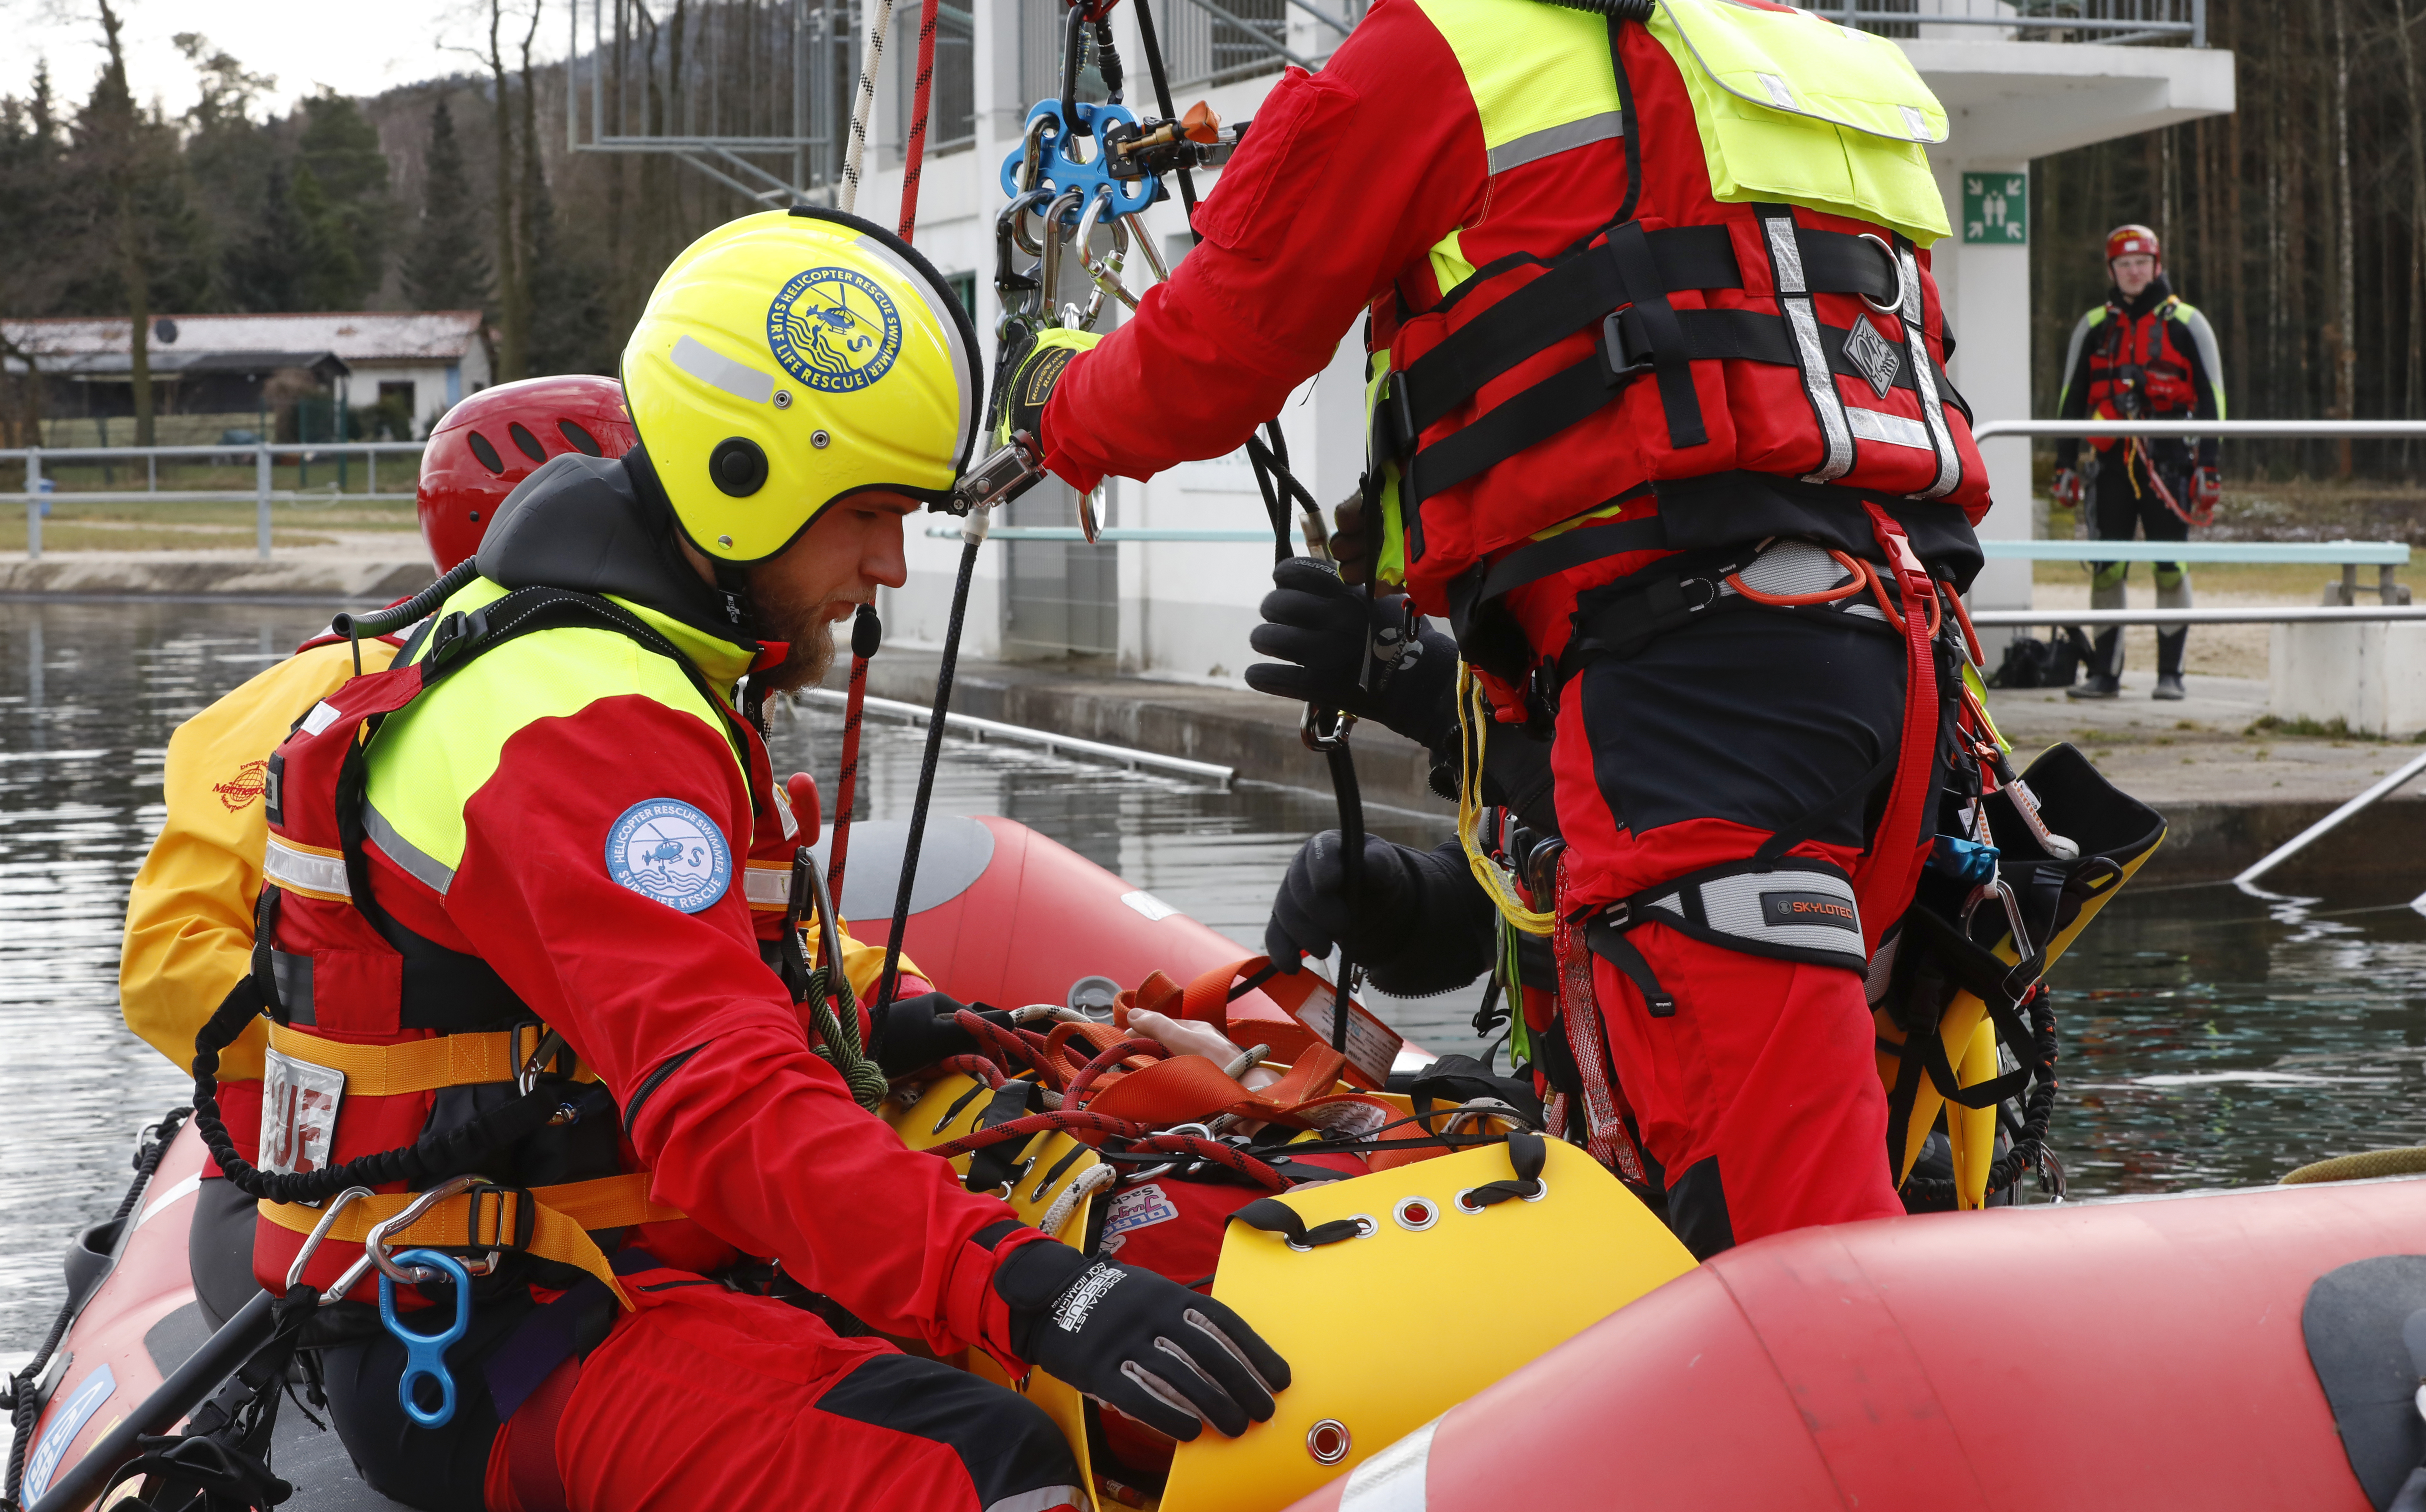 Emergencia en vivo | La aparición del HRS - Surf Life Rescue: imagen de seguridad y rescate acuático 38